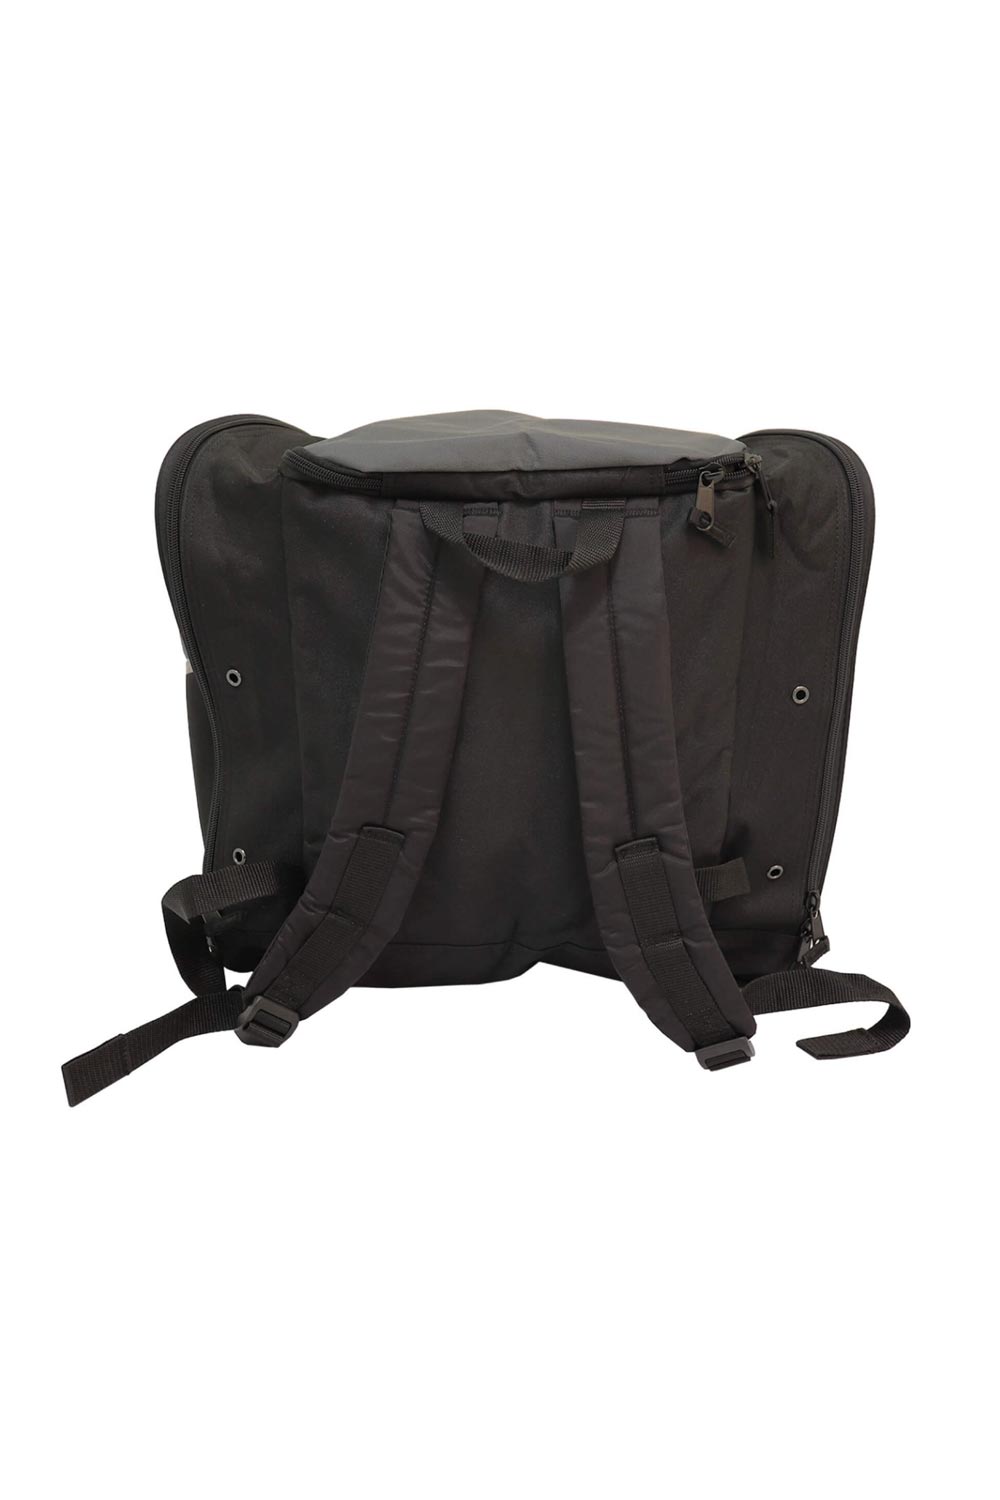 backpack straps for ski boot bag